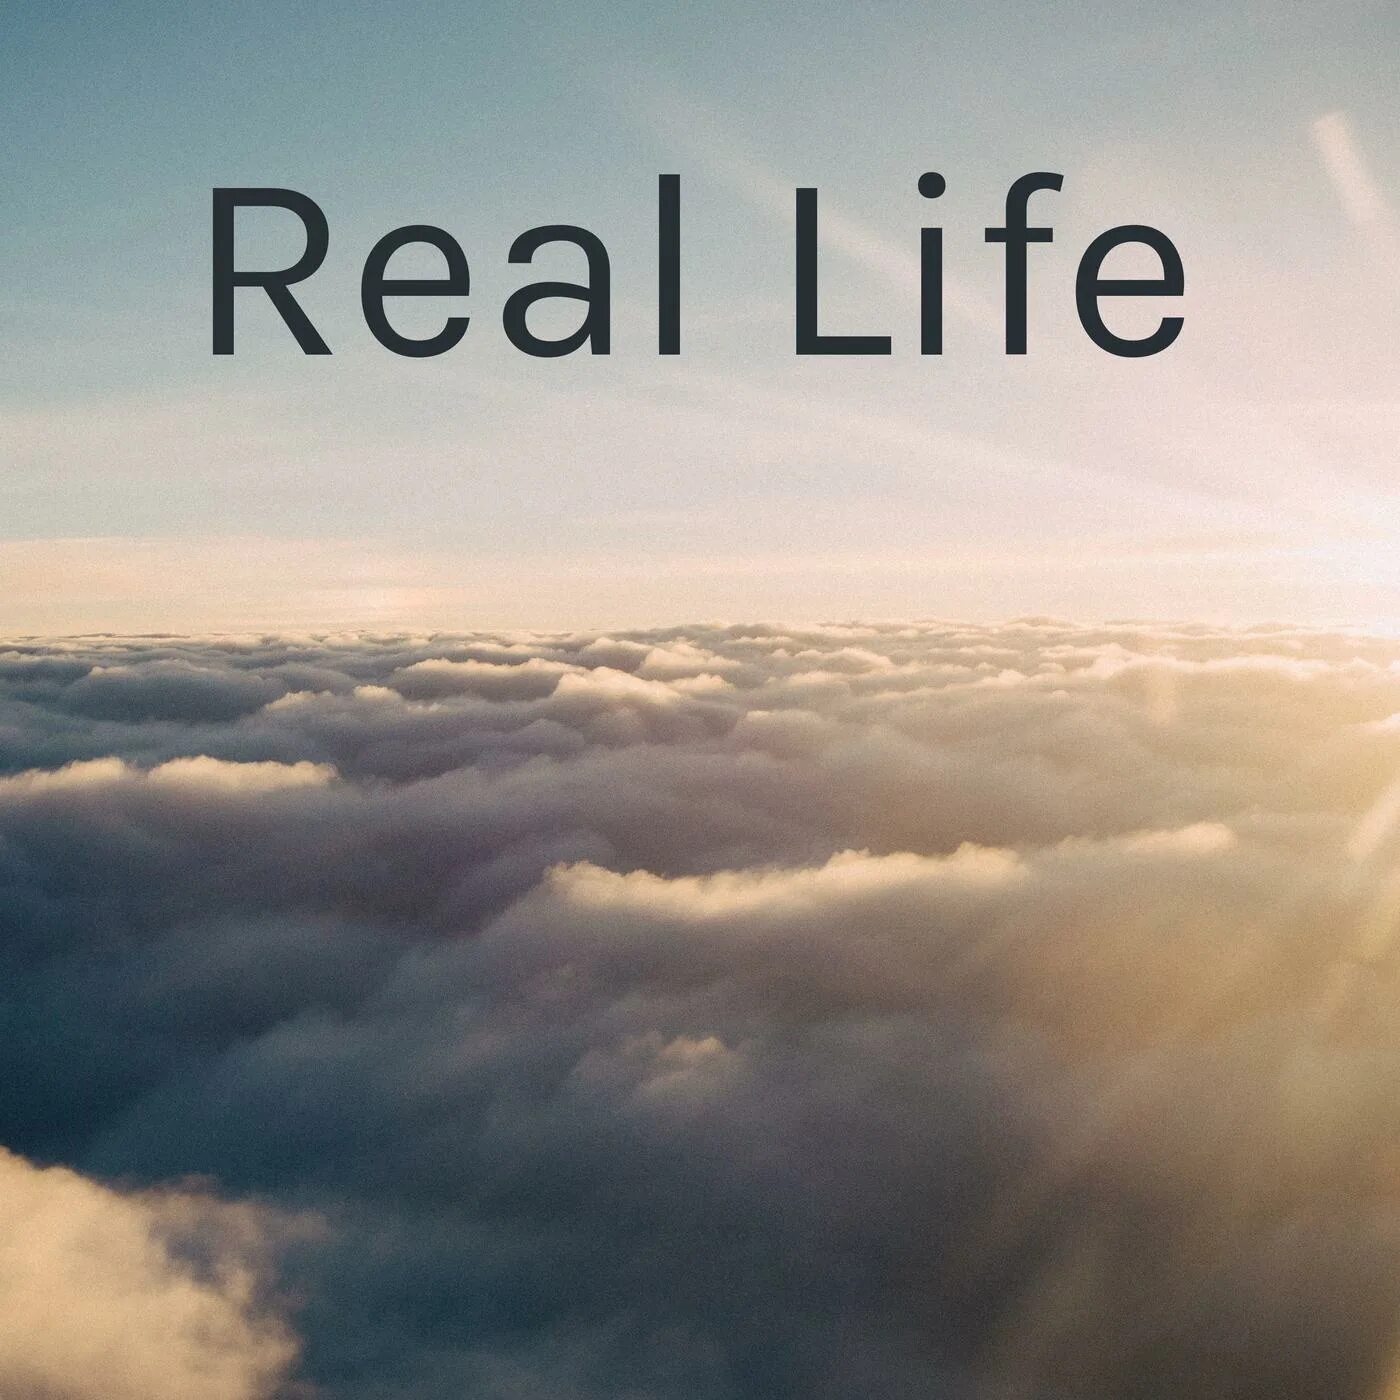 Real life 6. Real Life. Real Life надпись. Real Life картинка. Авы real Life.